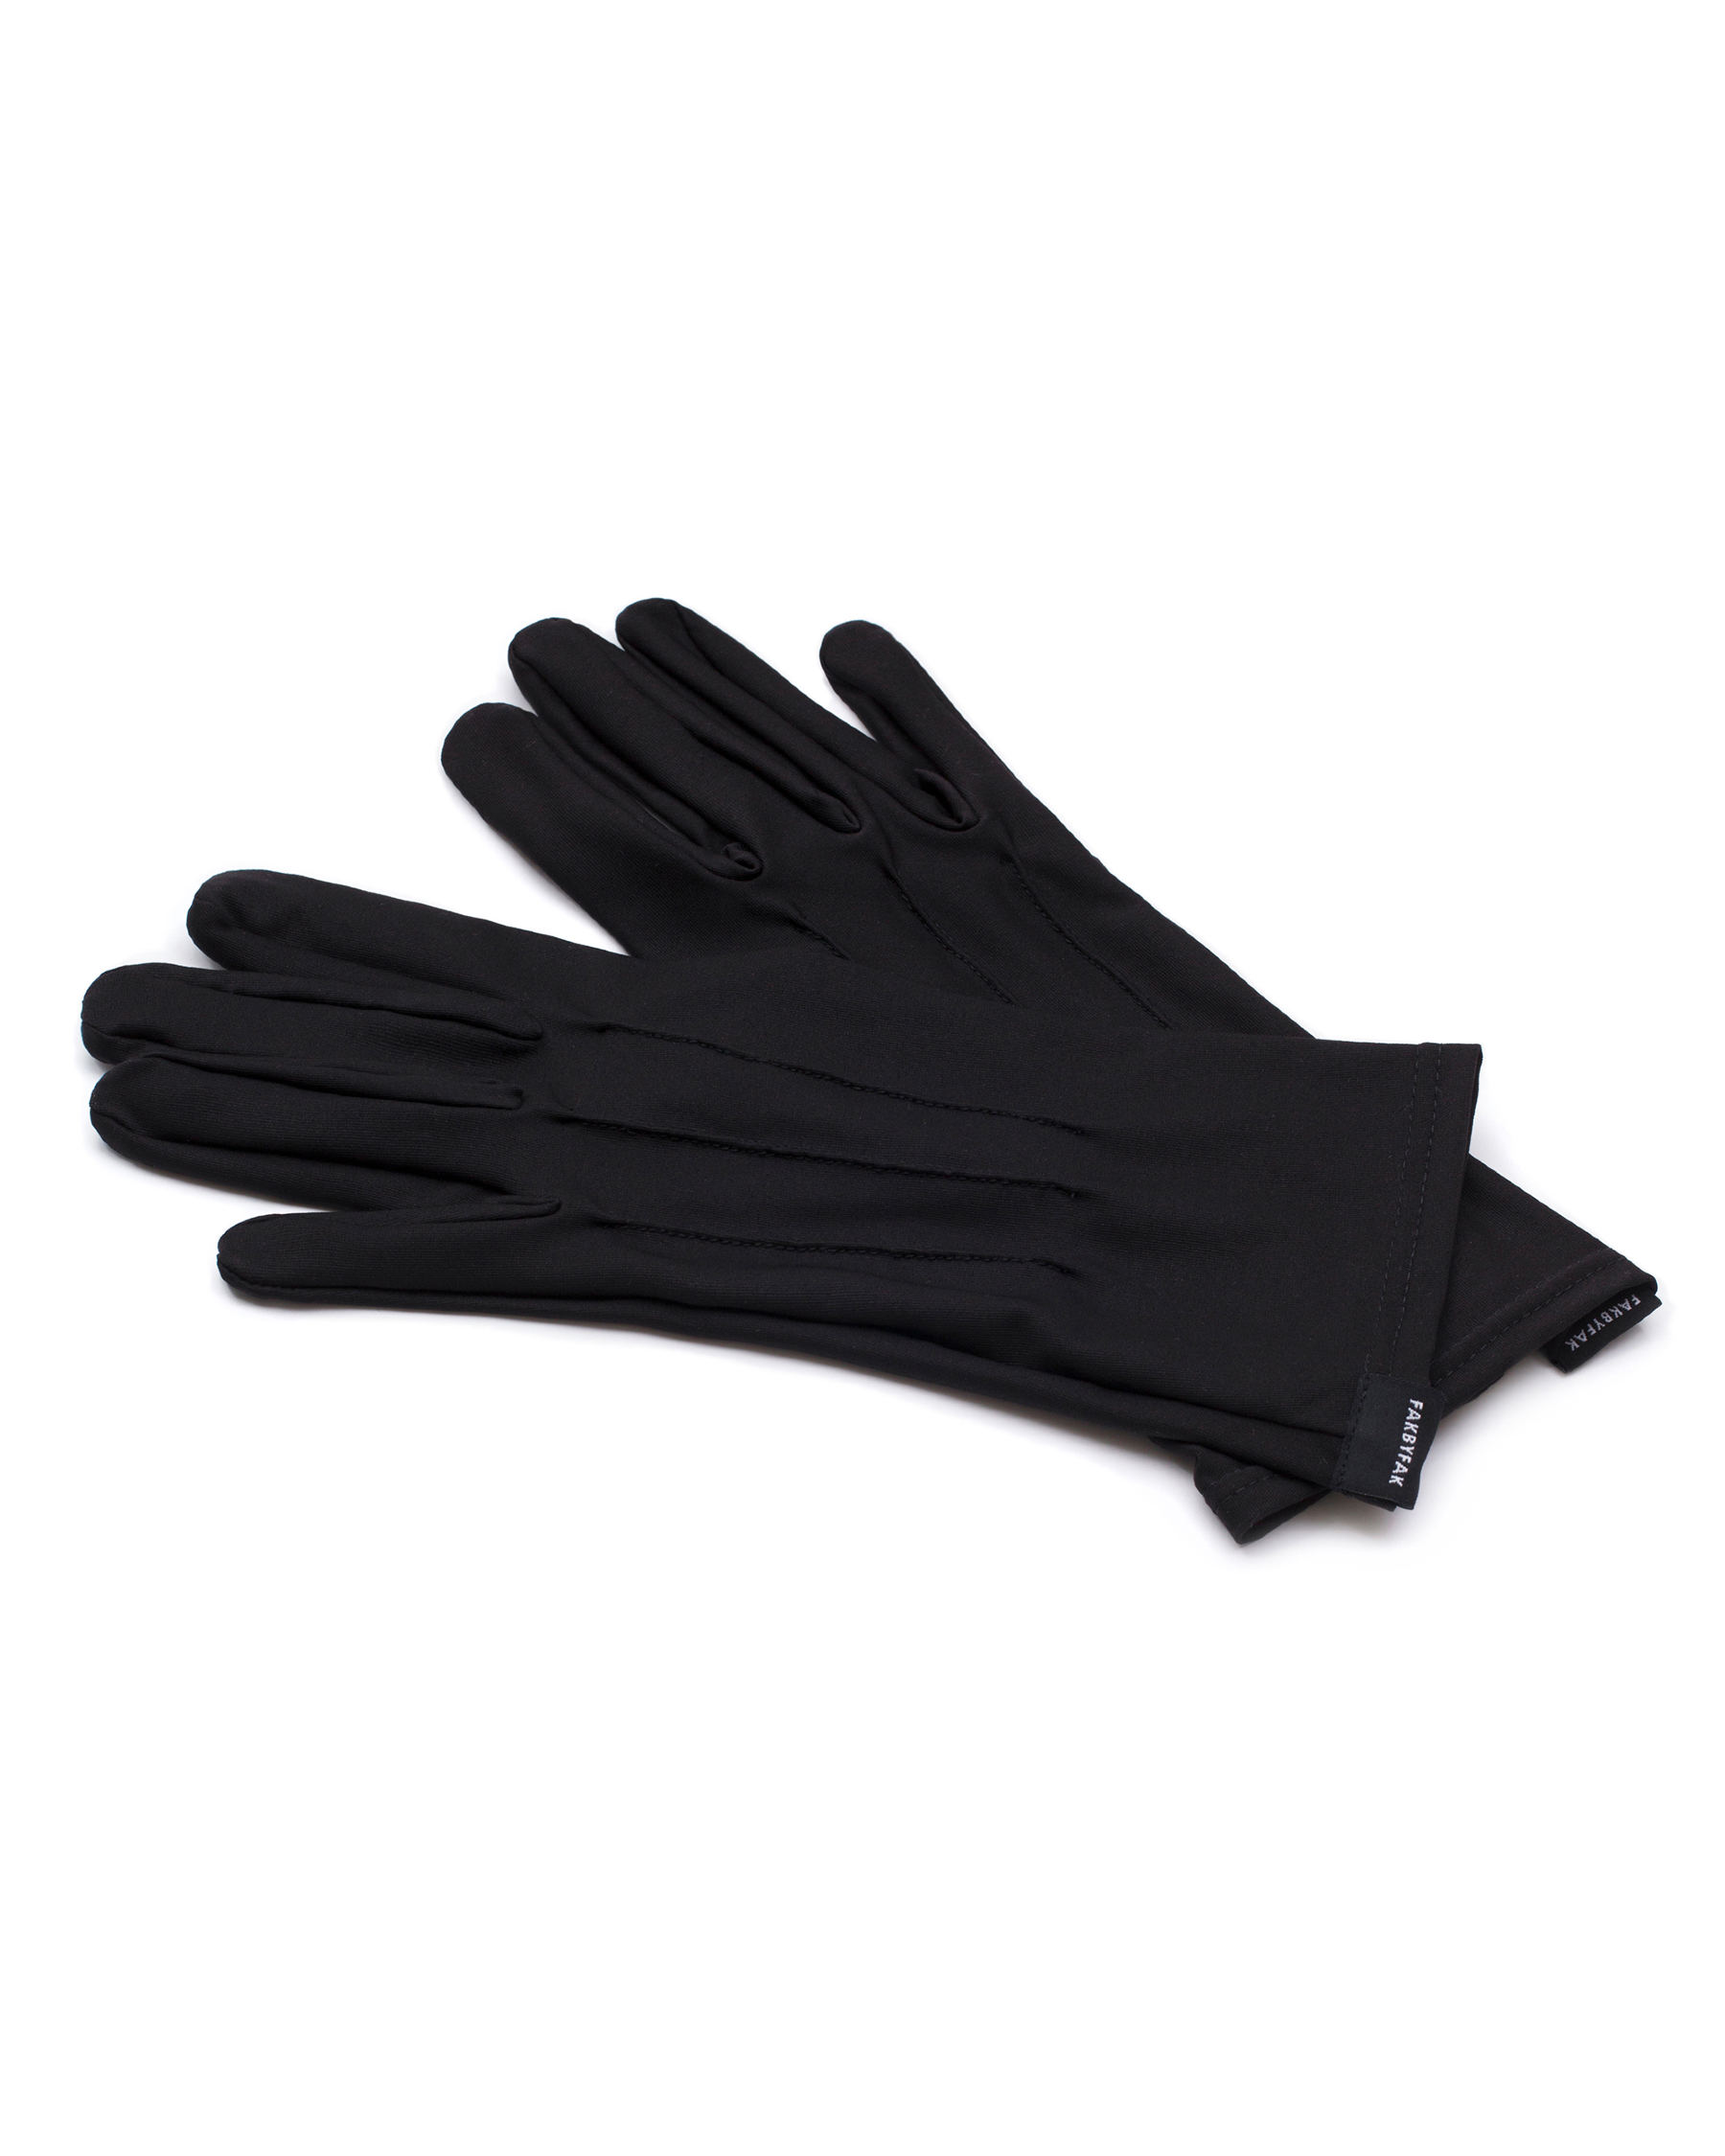 FAKBYFAK  The Vega. Fine Protective Antibacterial (ATB-UV+) Unisex Gloves. Black Code: FBF-41101-01